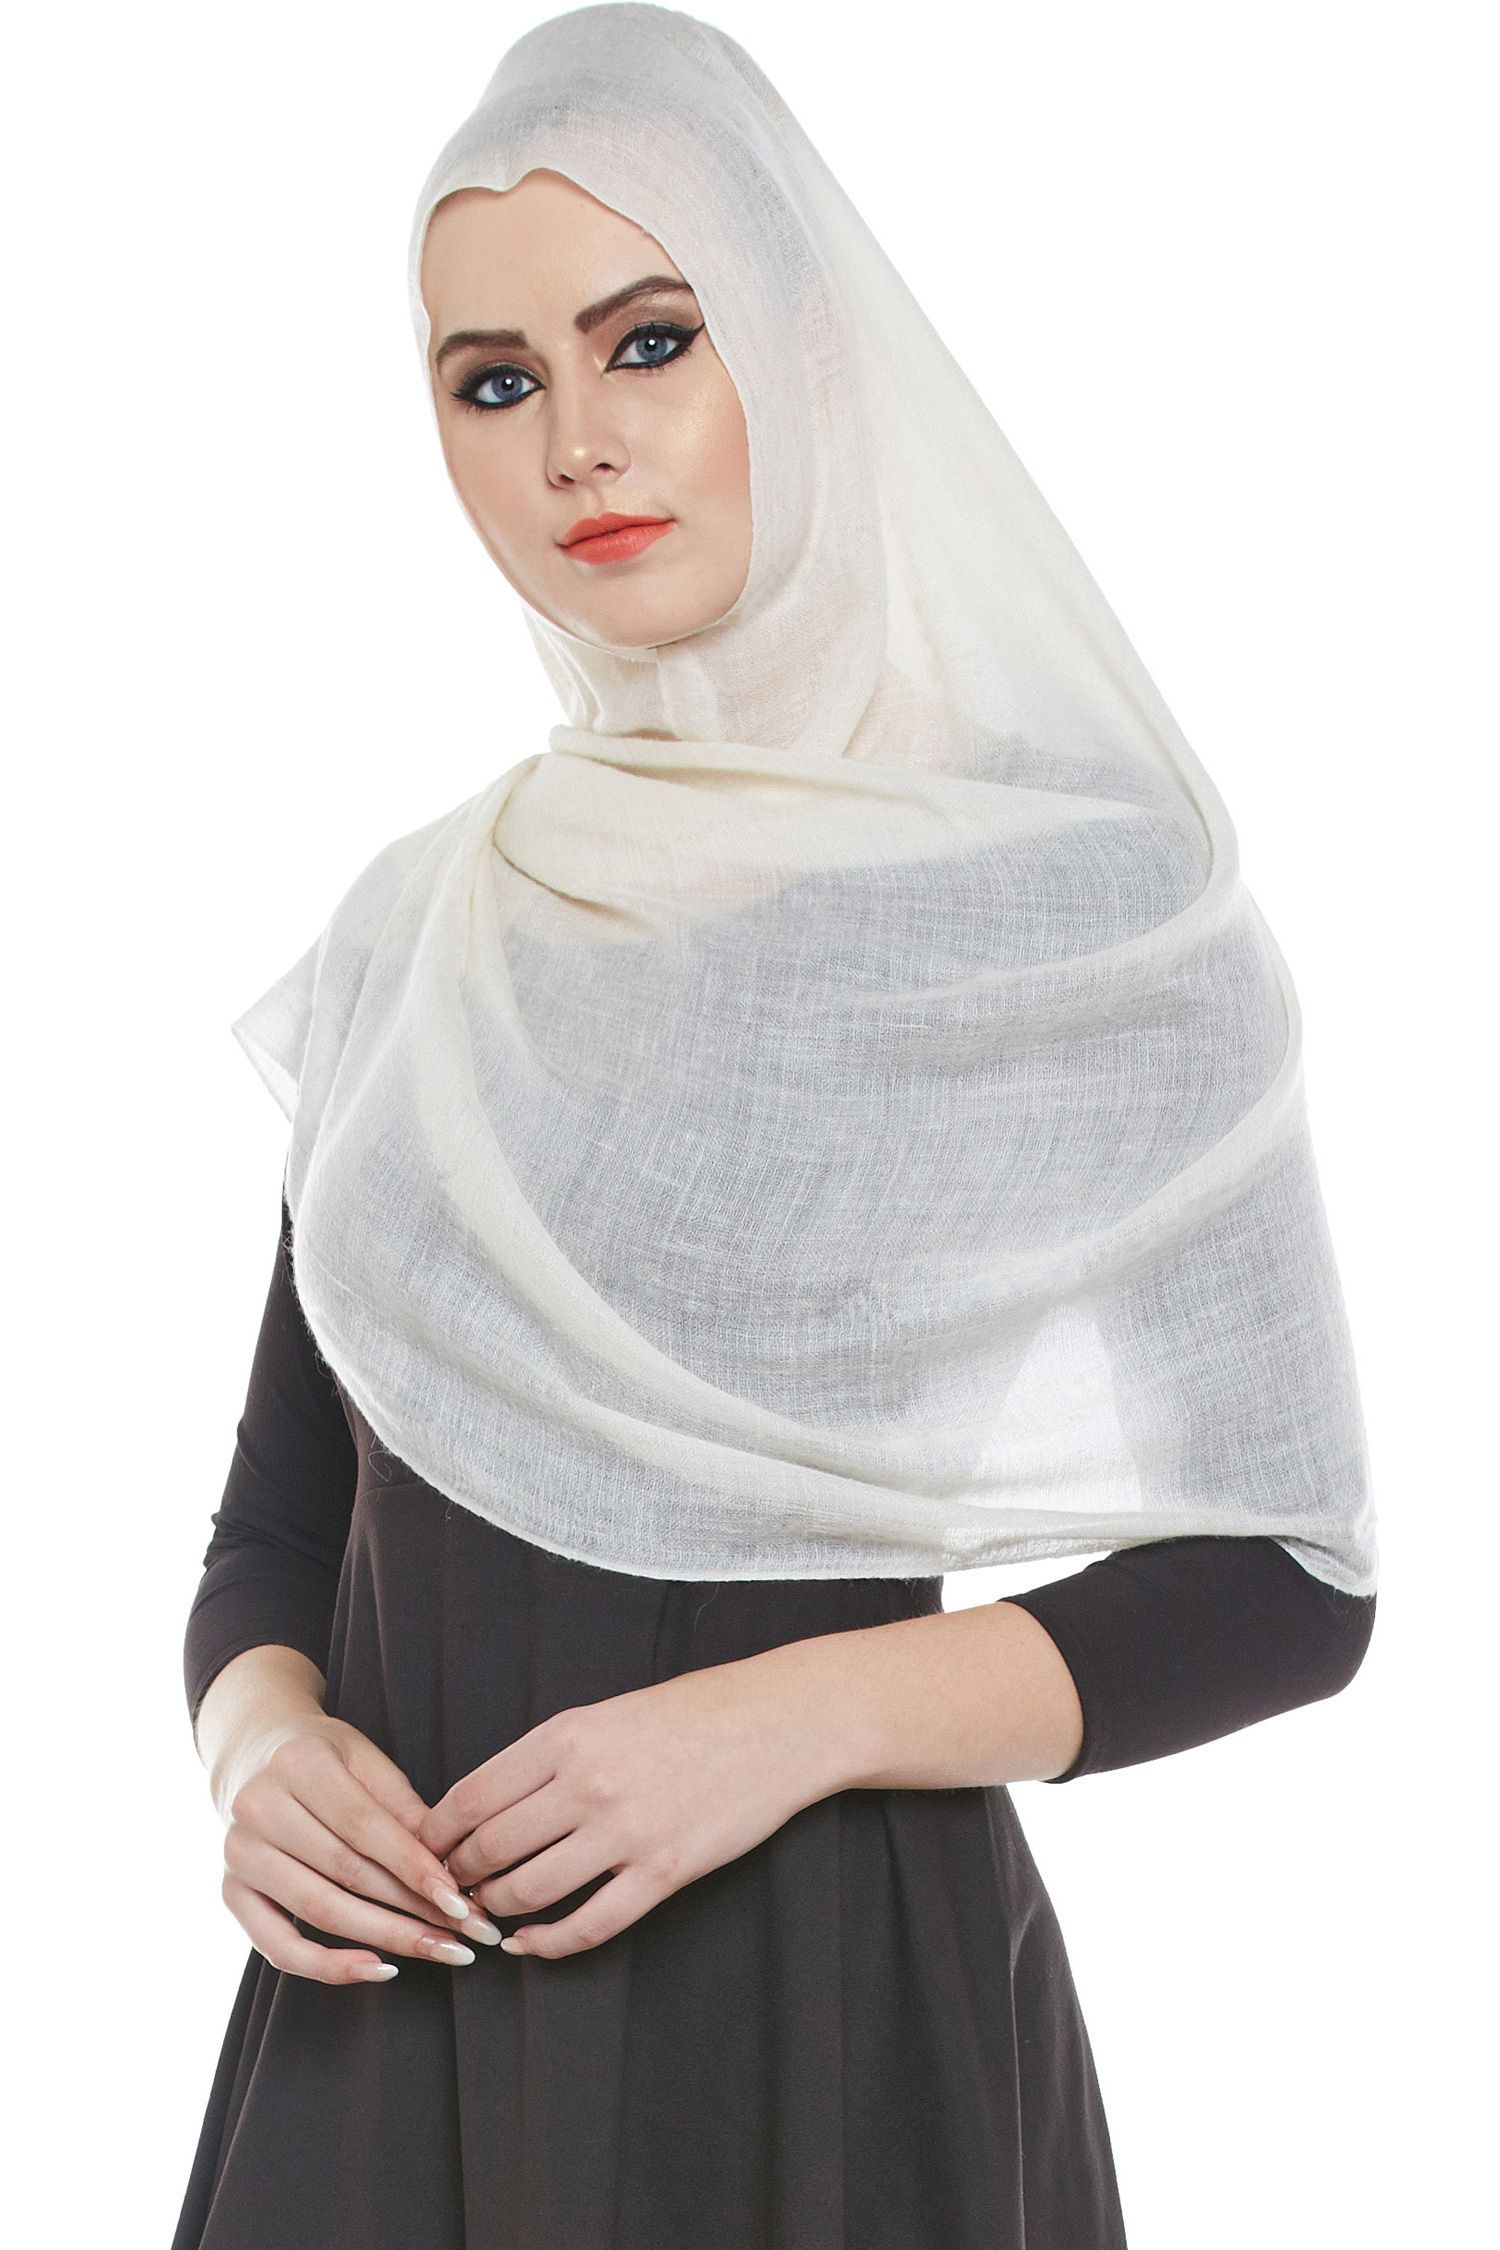 Ivory Pashmina Hijab | Handmade Cashmere Head Scarf